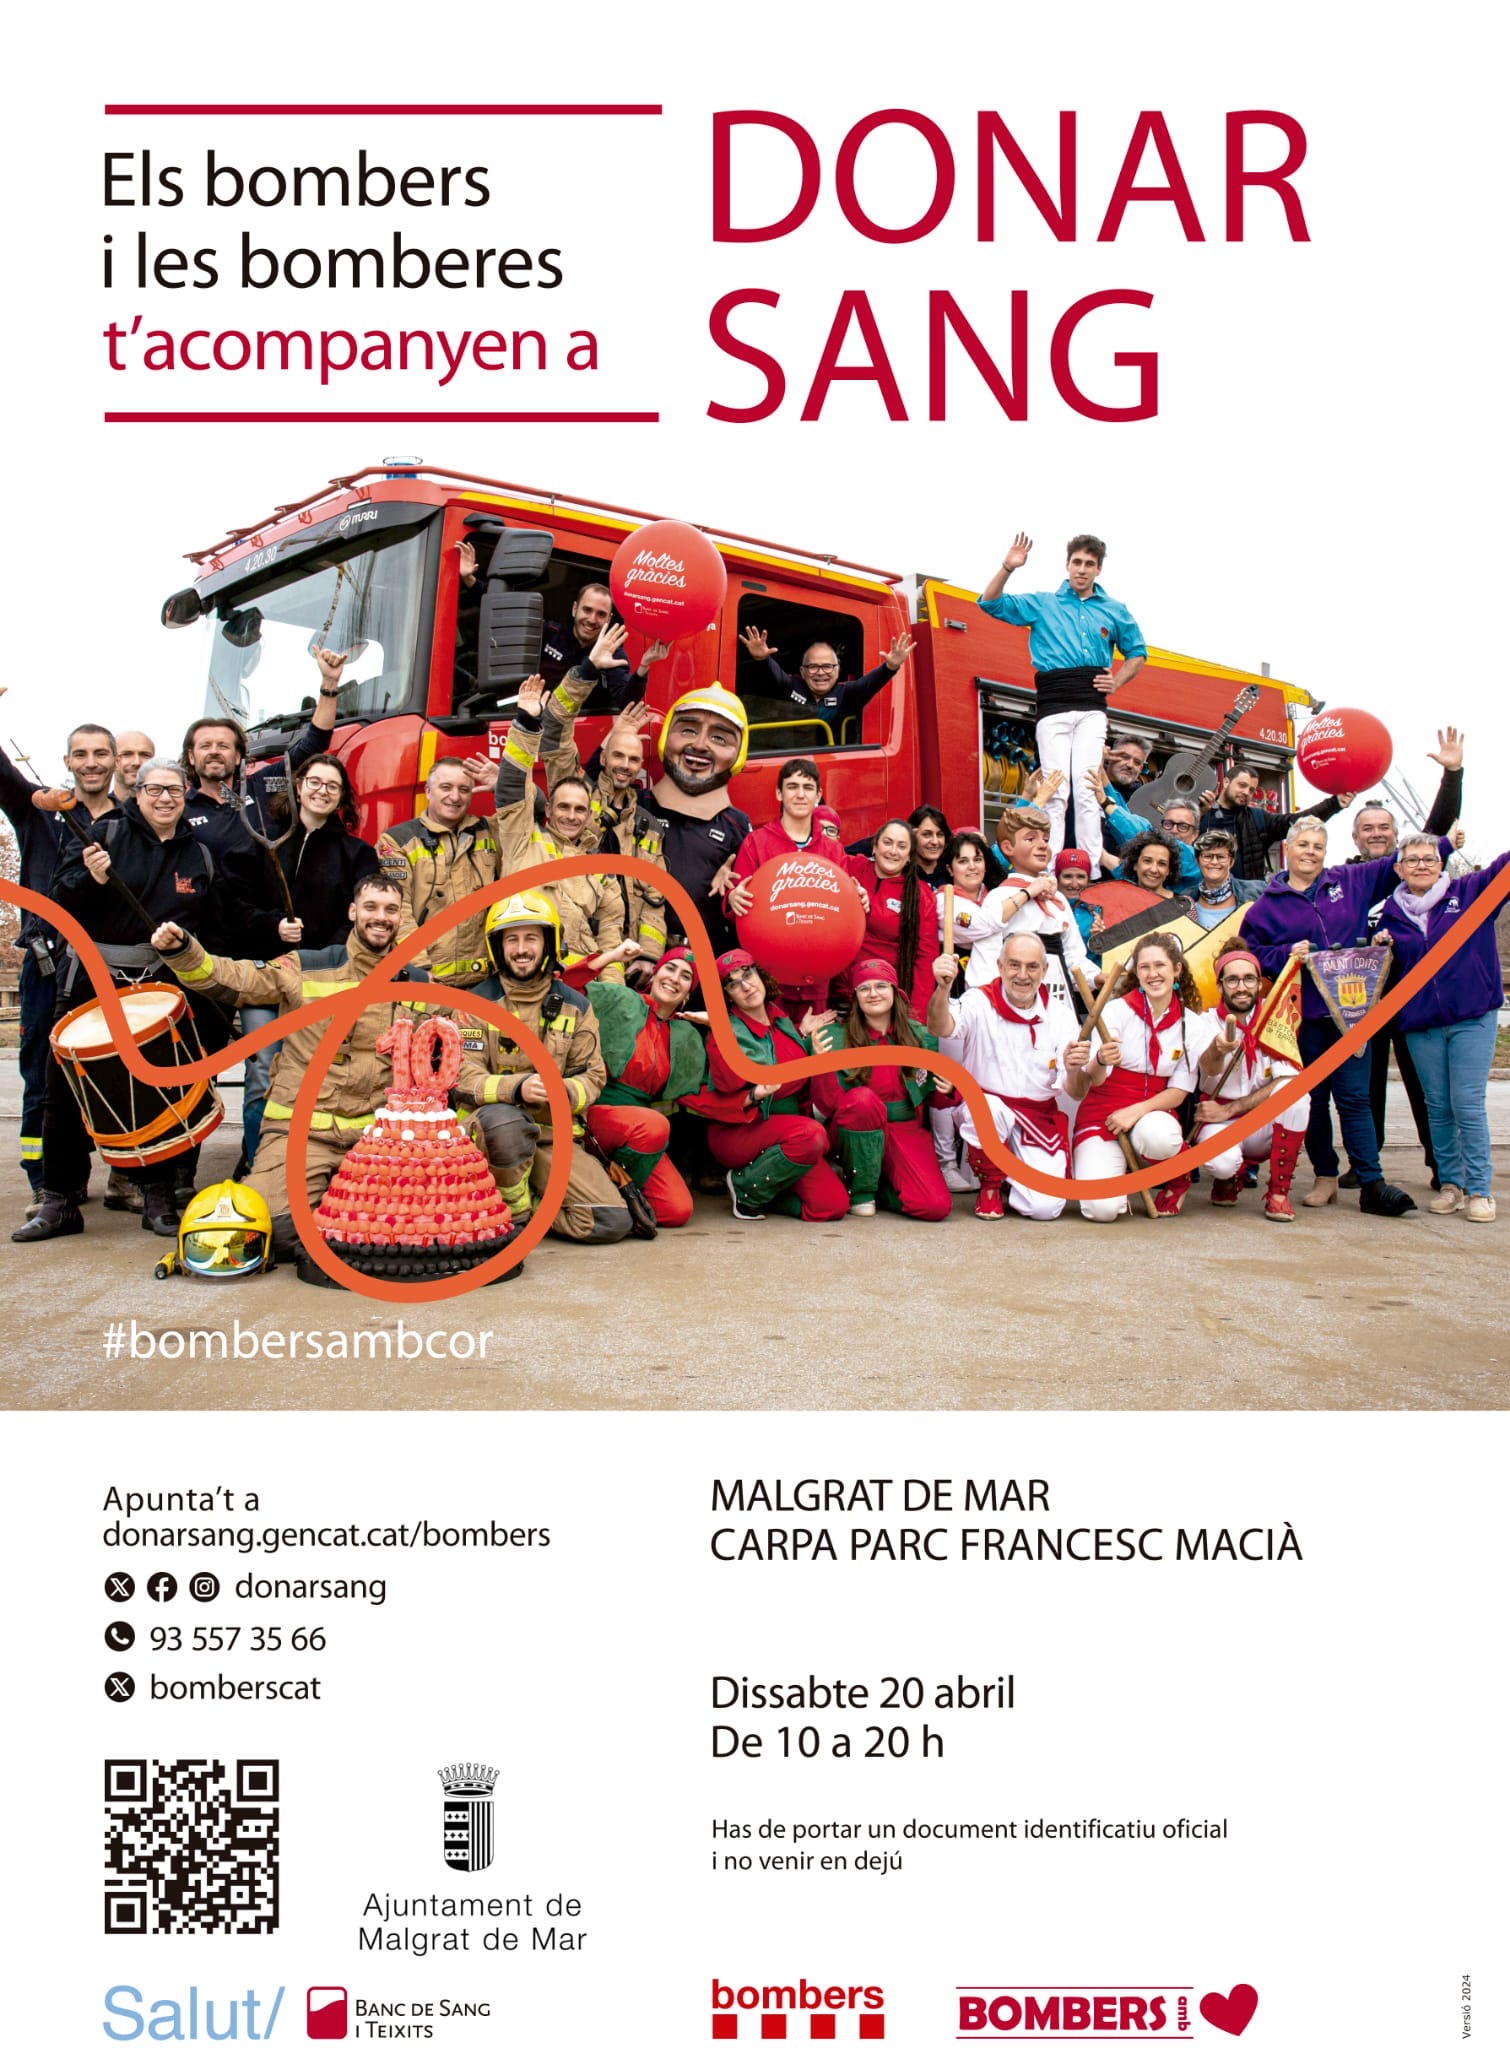 La campanya de donació de sang dels bombers, aquest dissabte al Parc Francesc Macià 